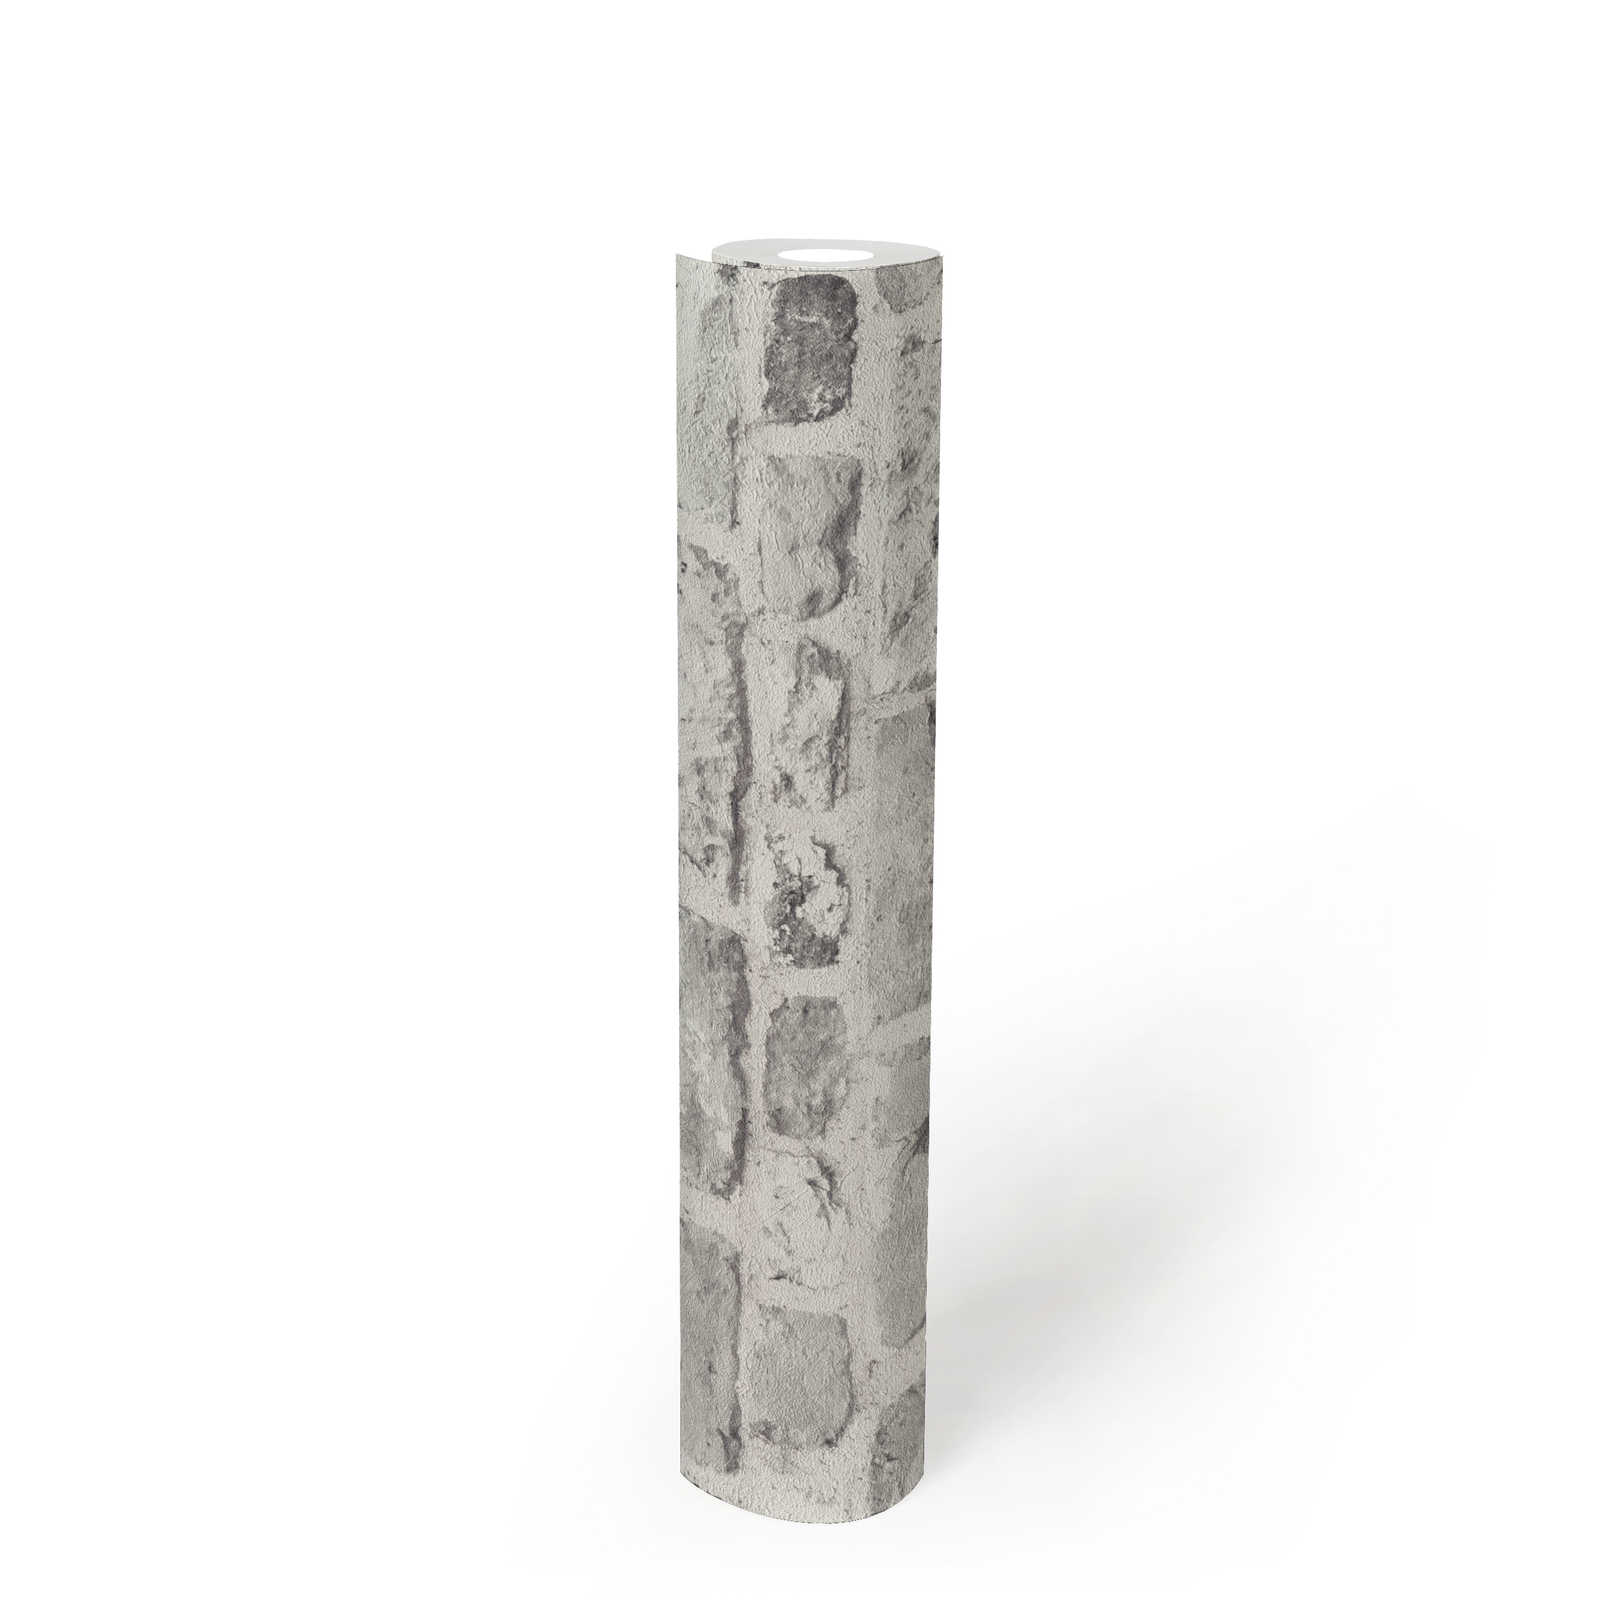             Papel pintado con aspecto de piedra y ladrillos en 3D - gris, blanco
        